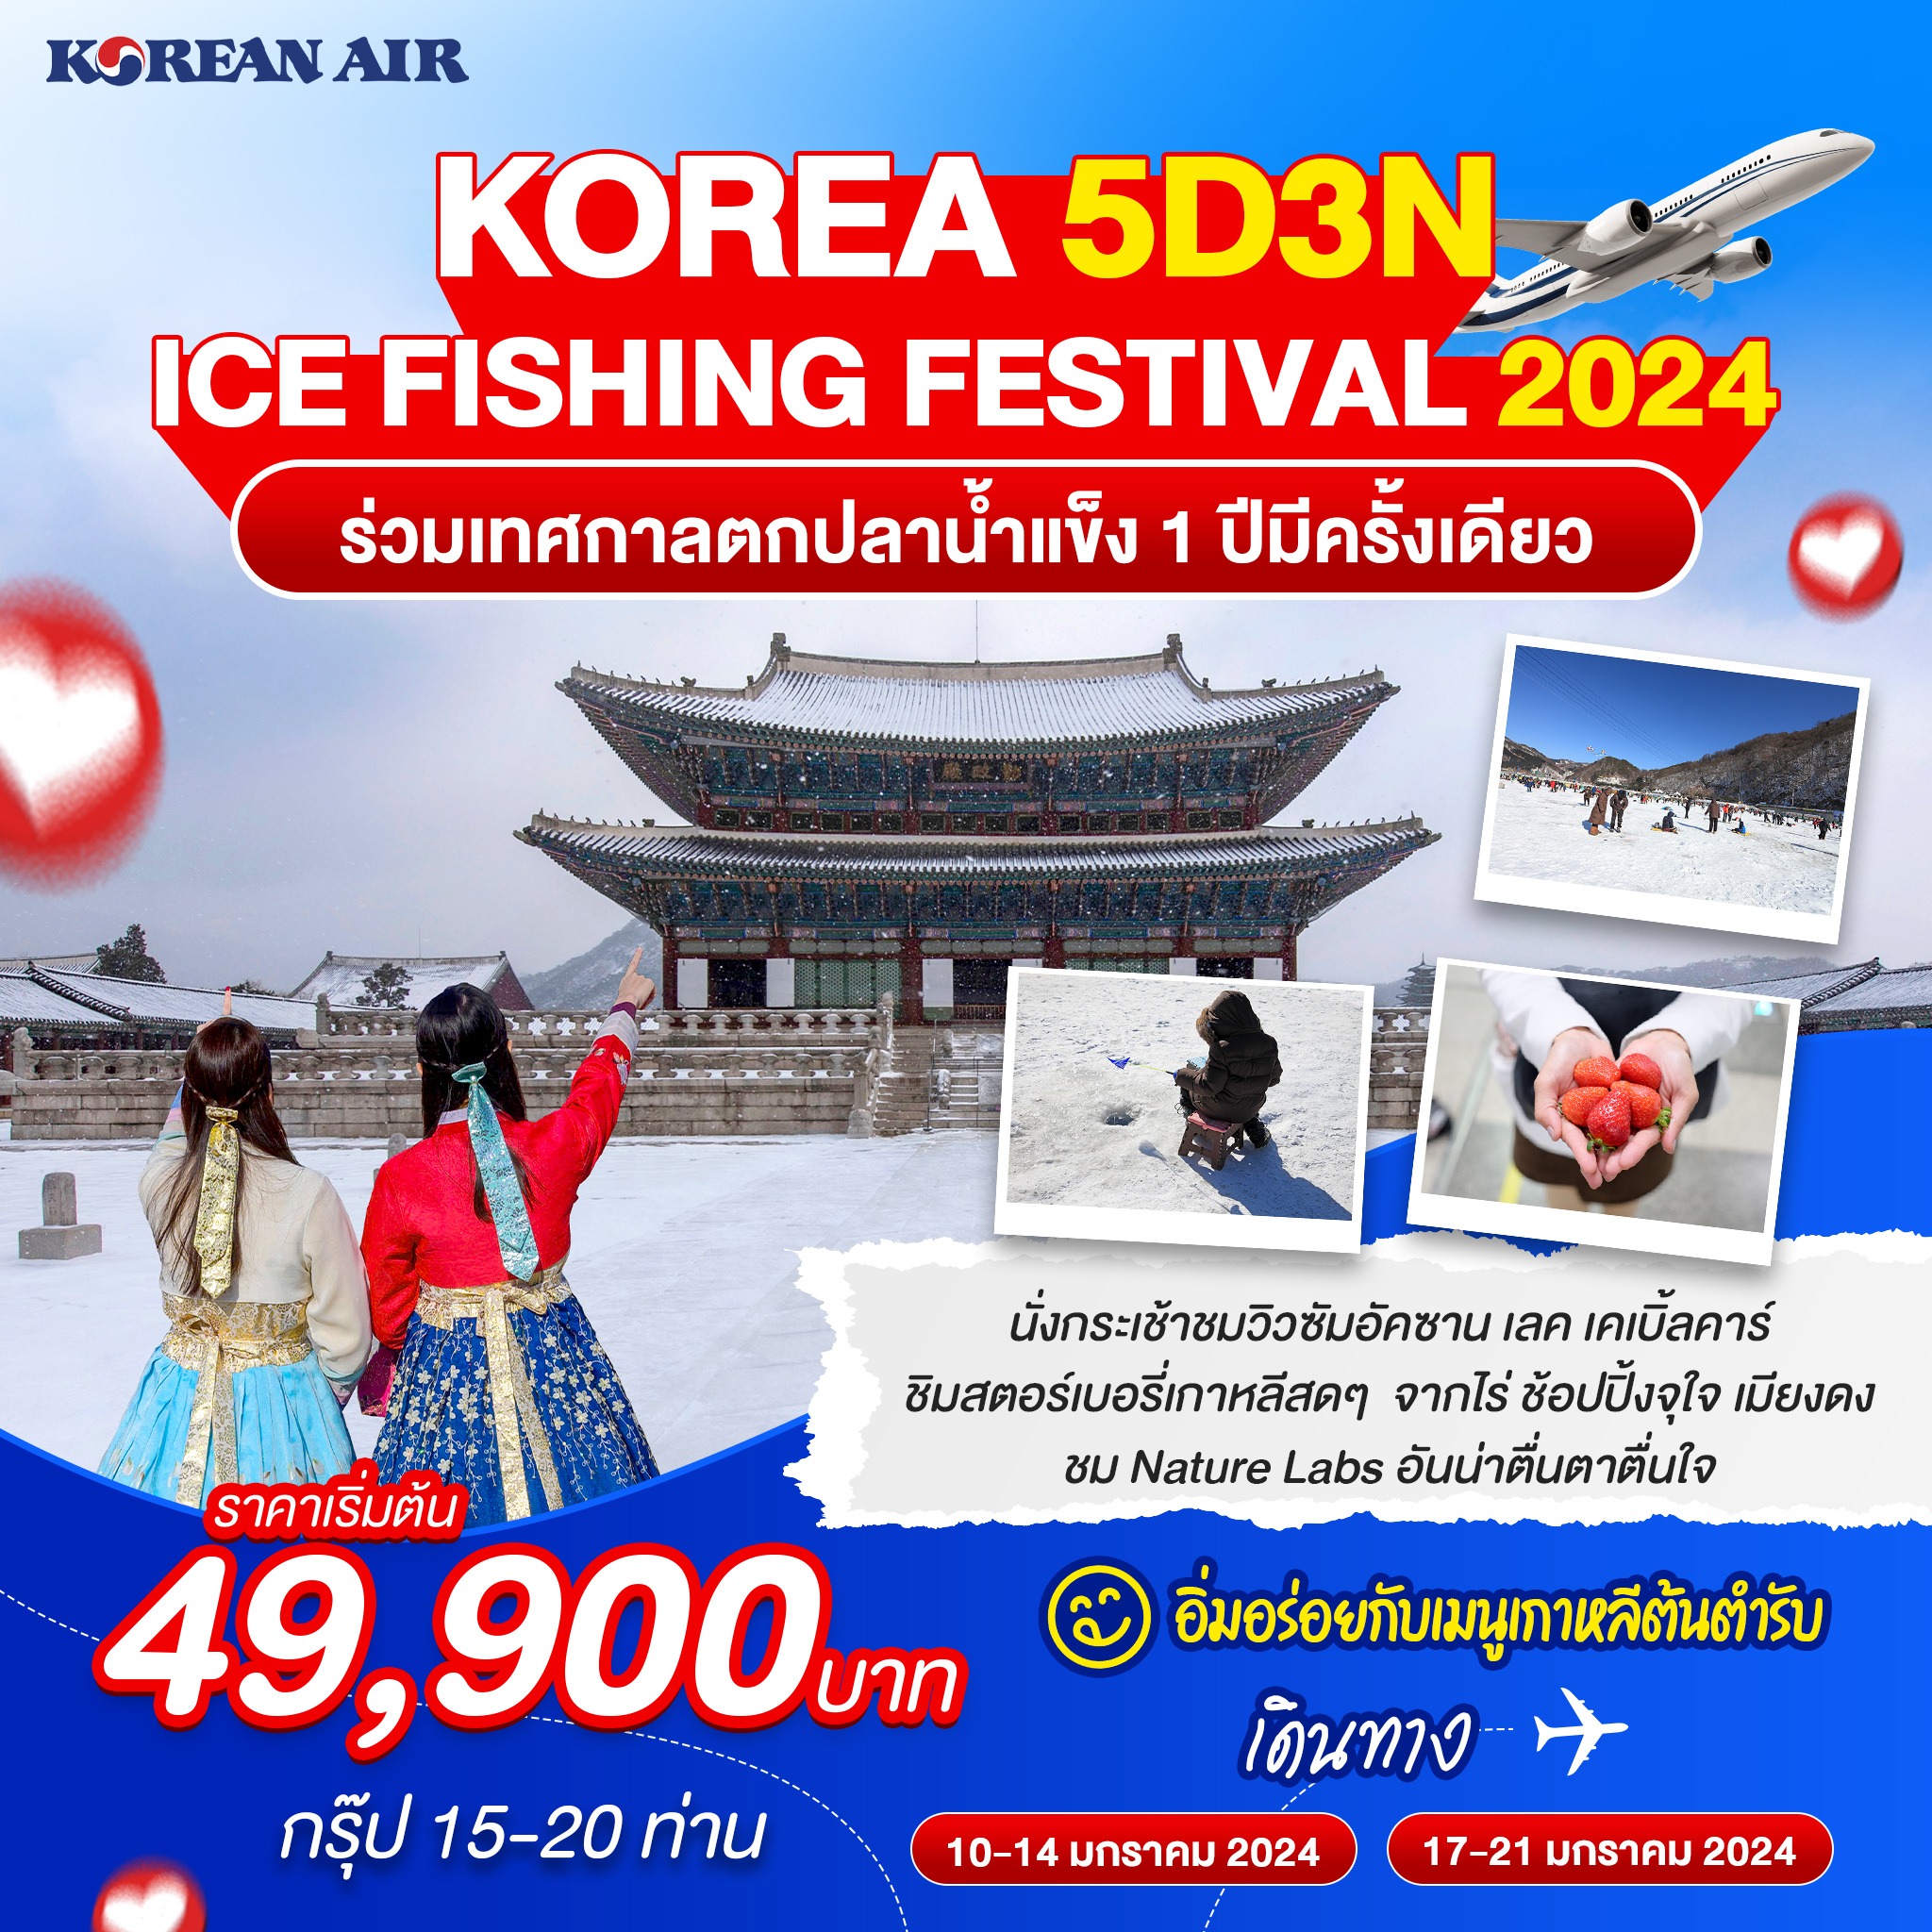 ทัวร์เกาหลี 5 วัน ICE FISHING FESTIVAL